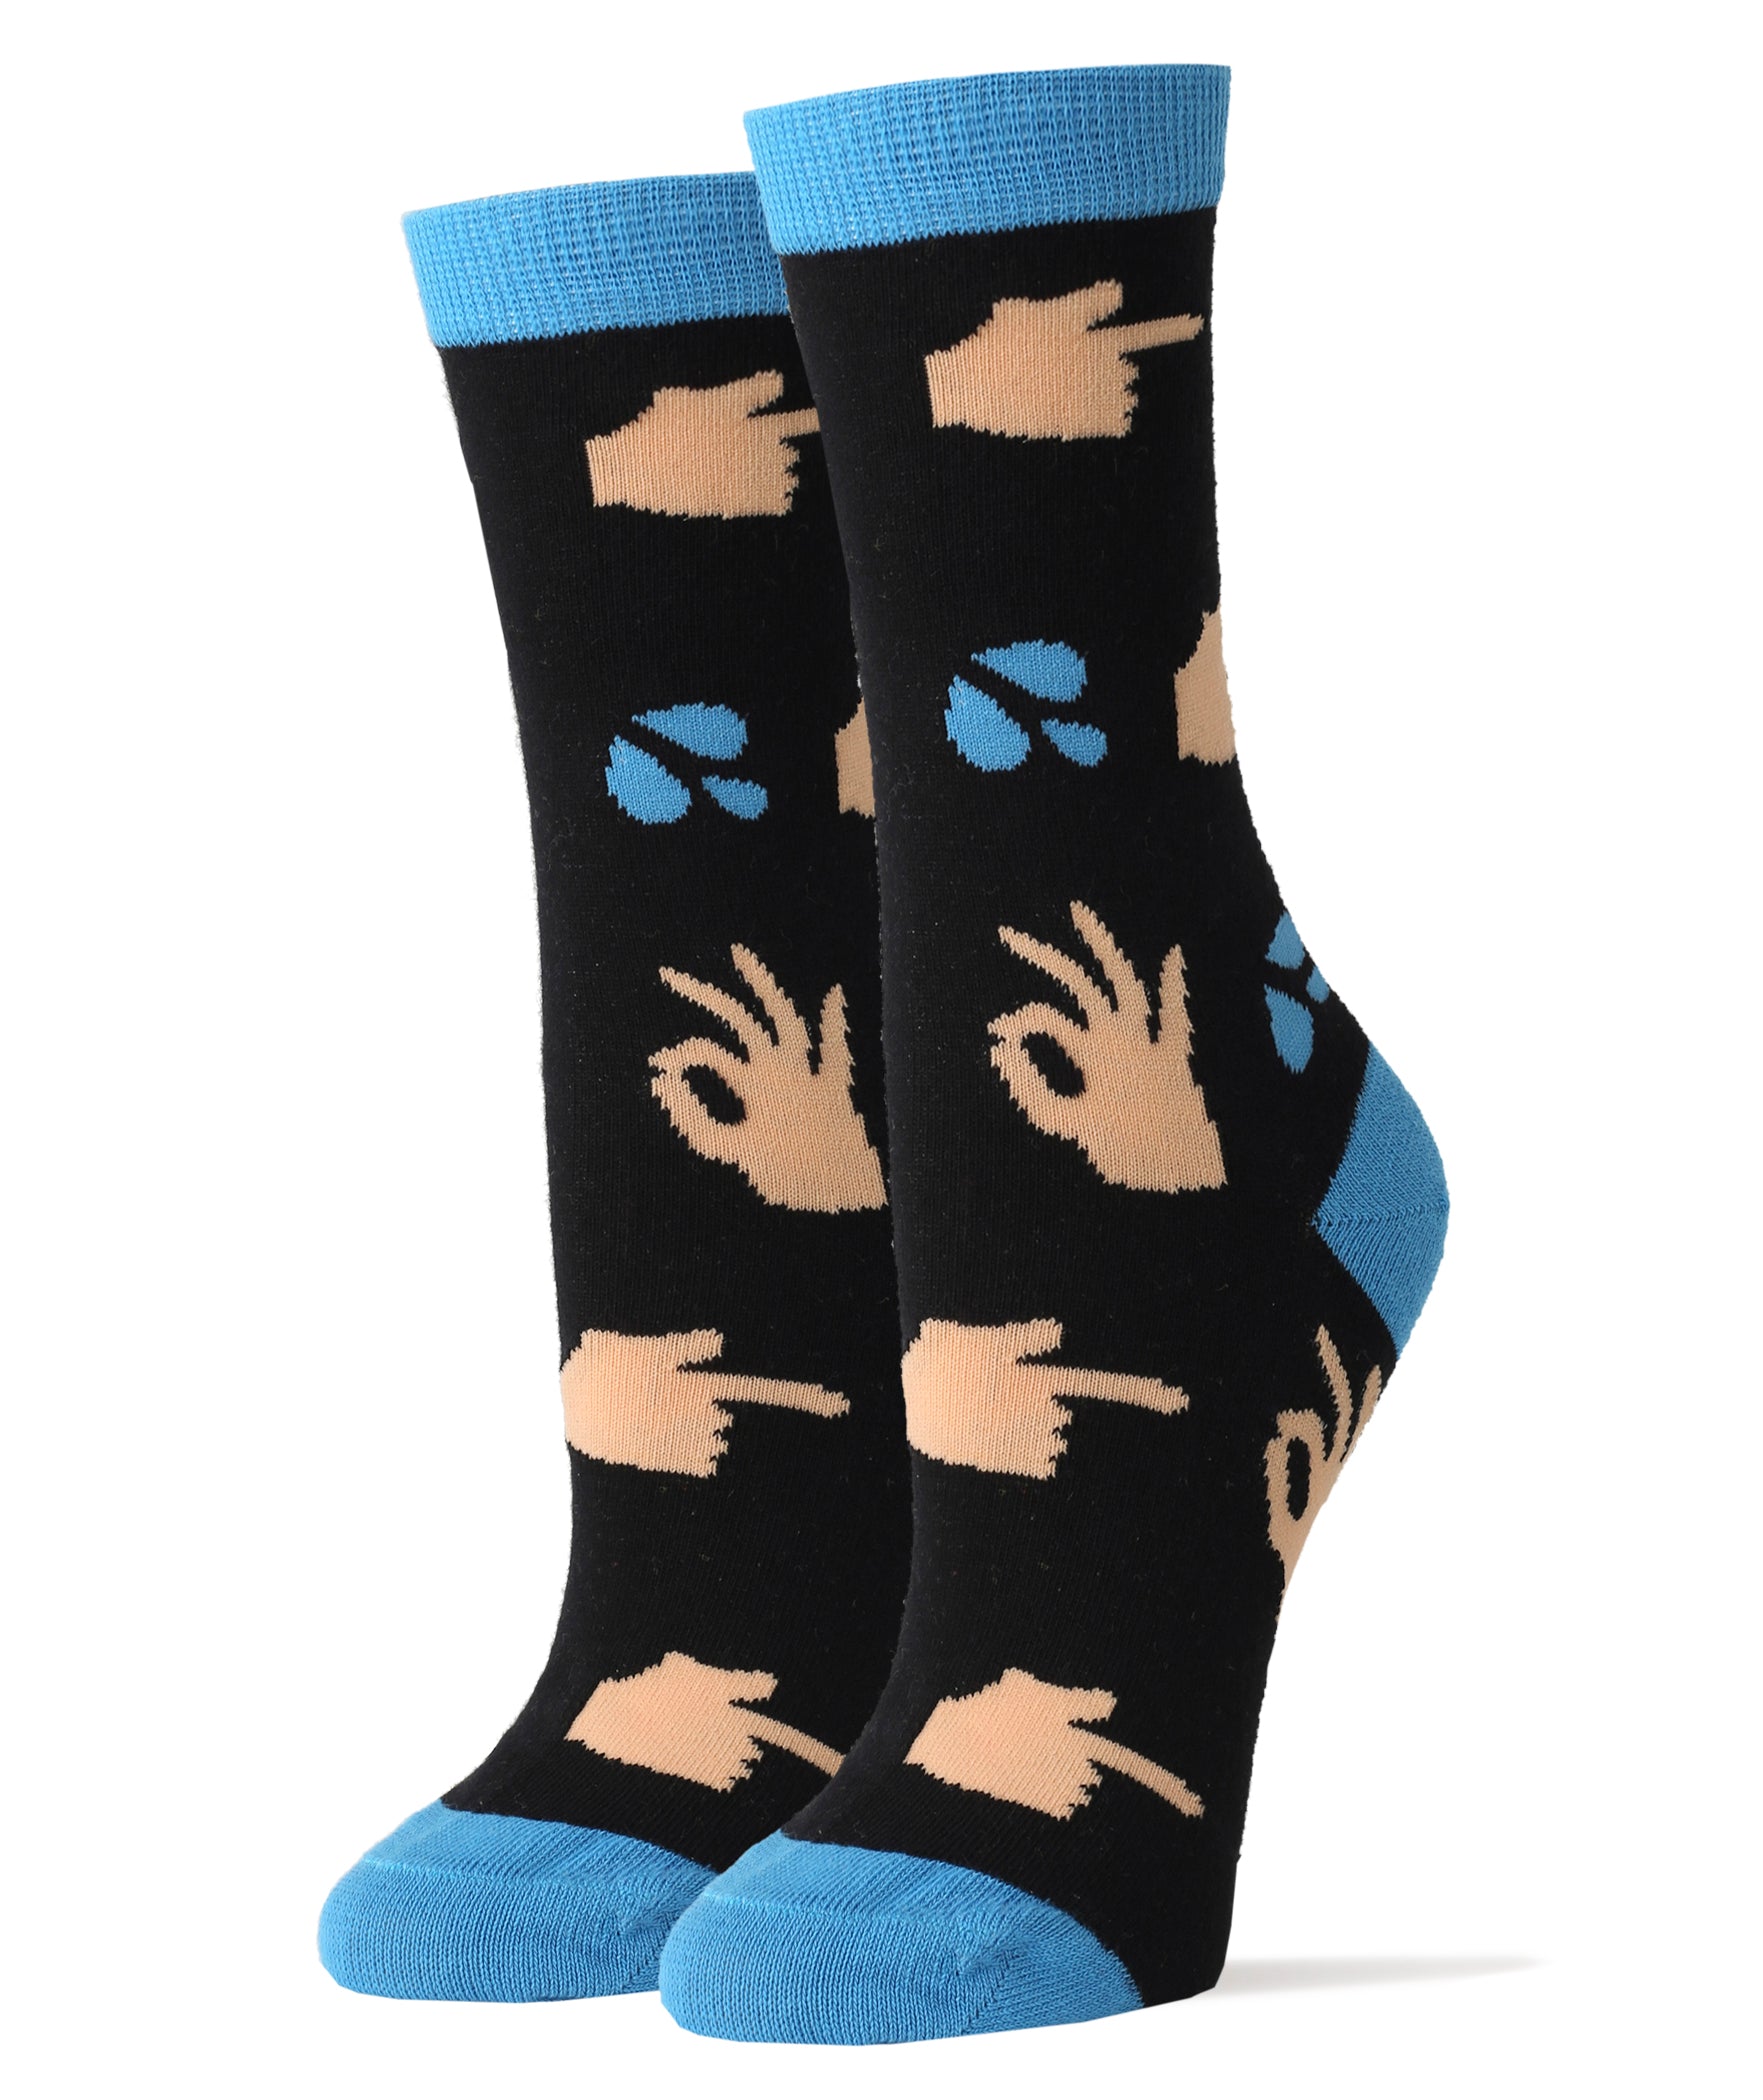 Perky Socks | Novelty Crew Socks For Women